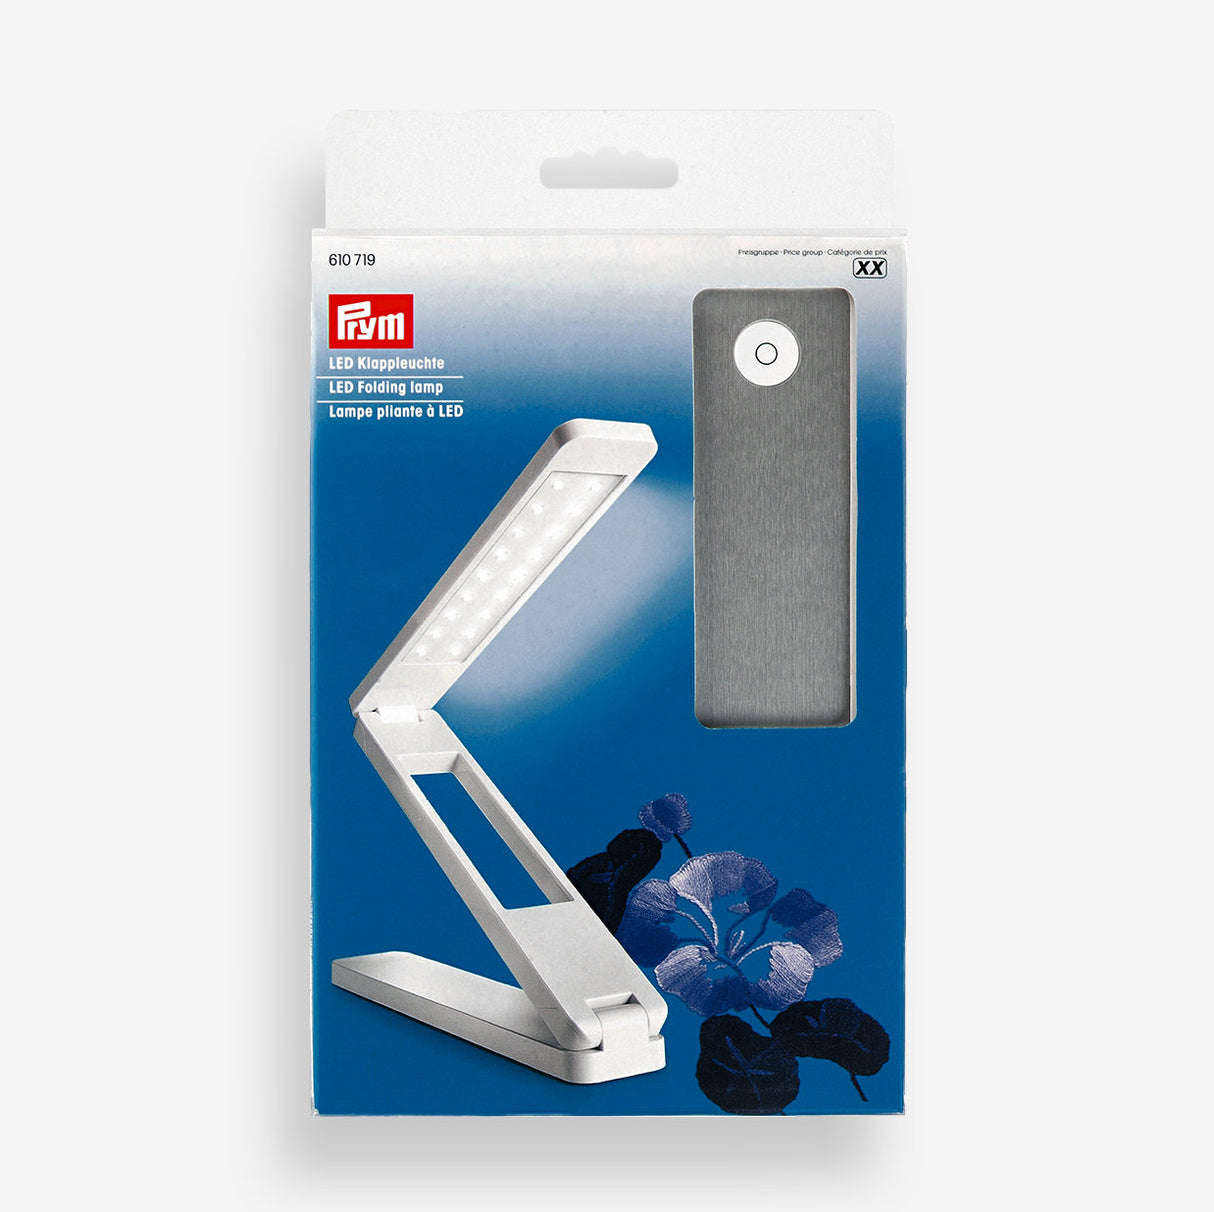 Folding LED lamp - Prym 610719